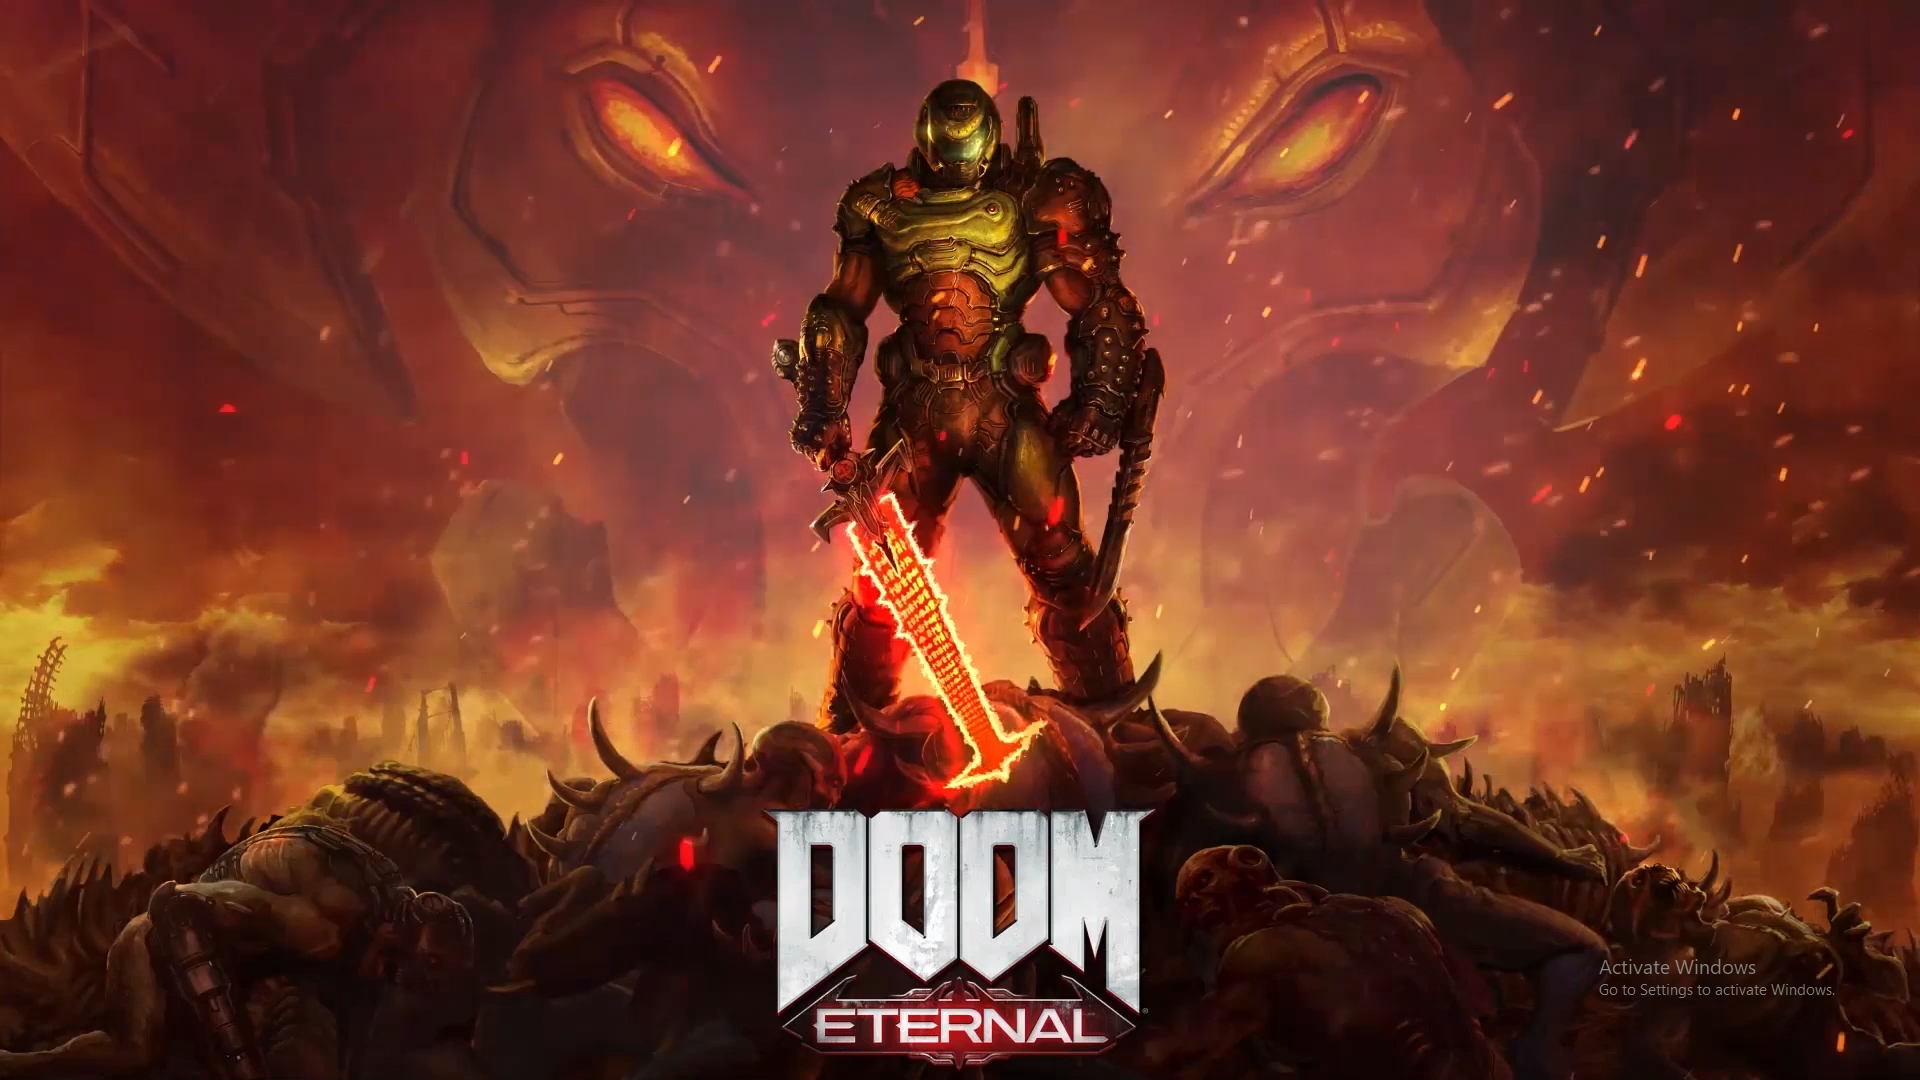 Doom Eternal Wallpapers HD Free download - PixelsTalk.Net